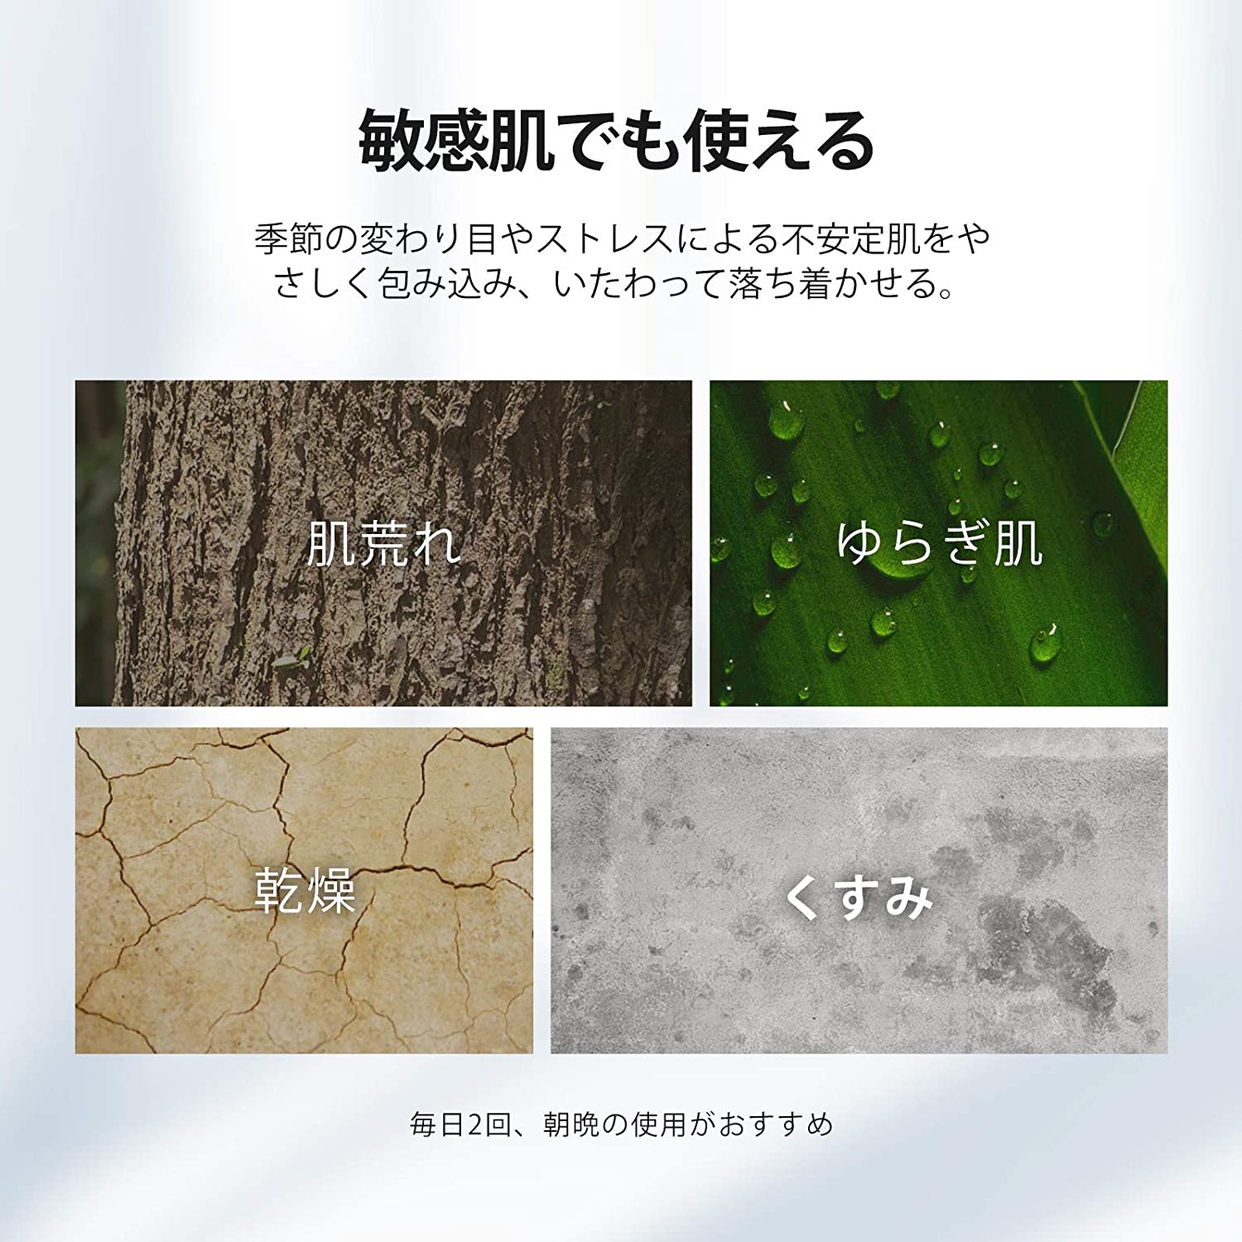 SUKUI LABO(スクイラボ) ザ・コレクティブエッセンスの商品画像サムネ3 